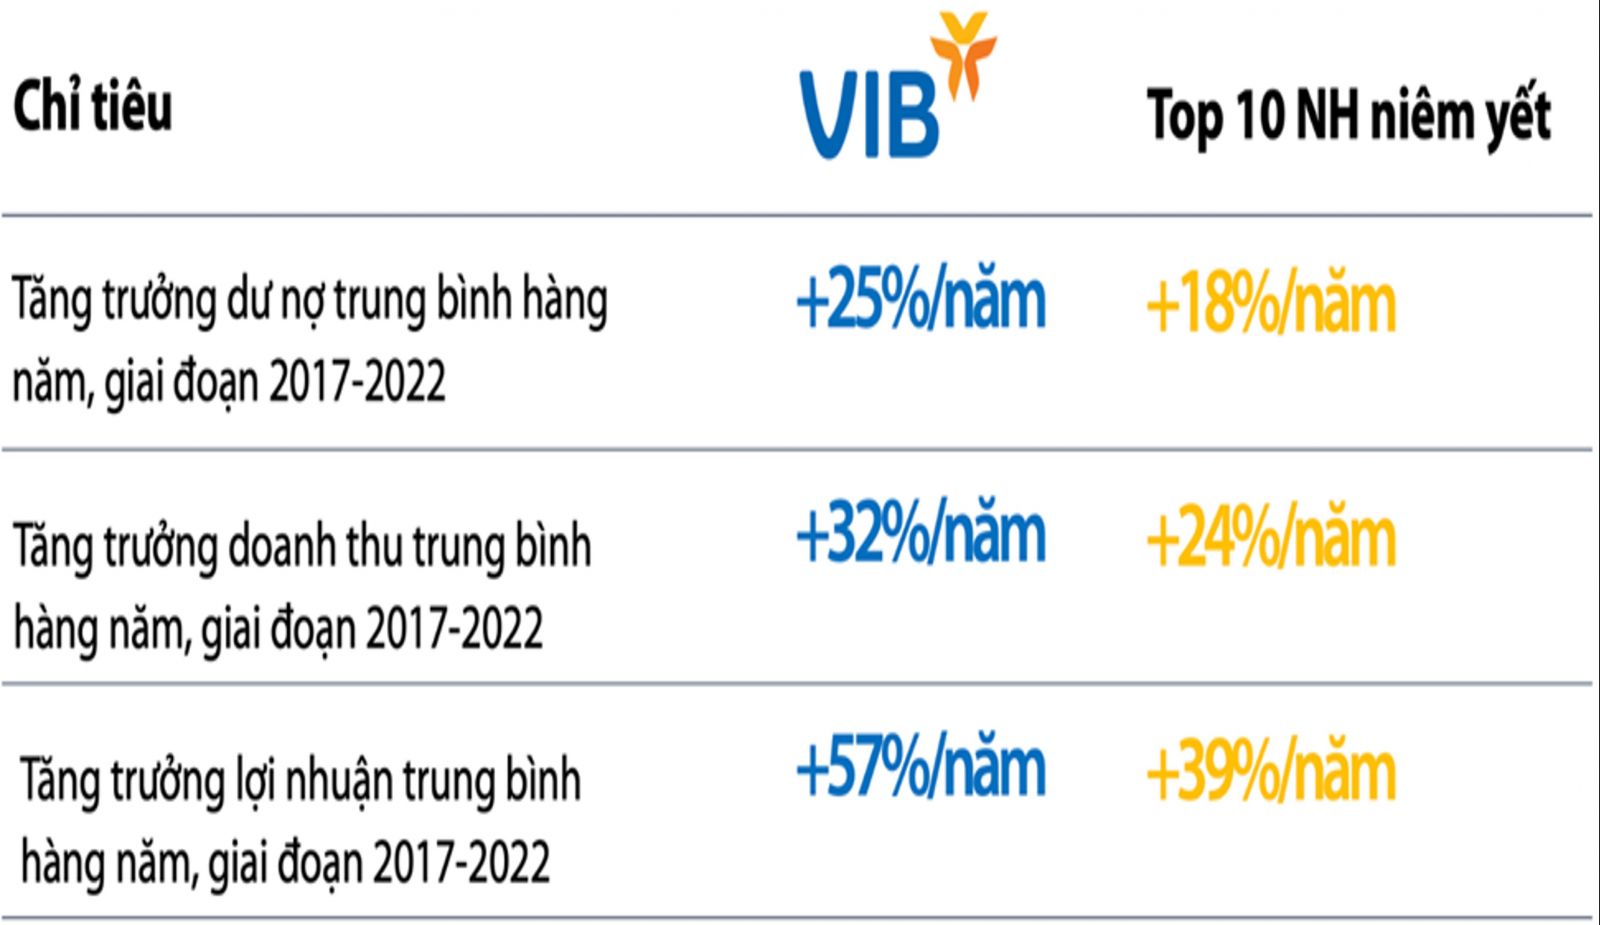 Tốc độ tăng trưởng một số chỉ tiêu của VIB so với Top 10 ngân hàng niêm yết, 2017-2022  Nguồn: Finpro, BCTC các ngân hàng